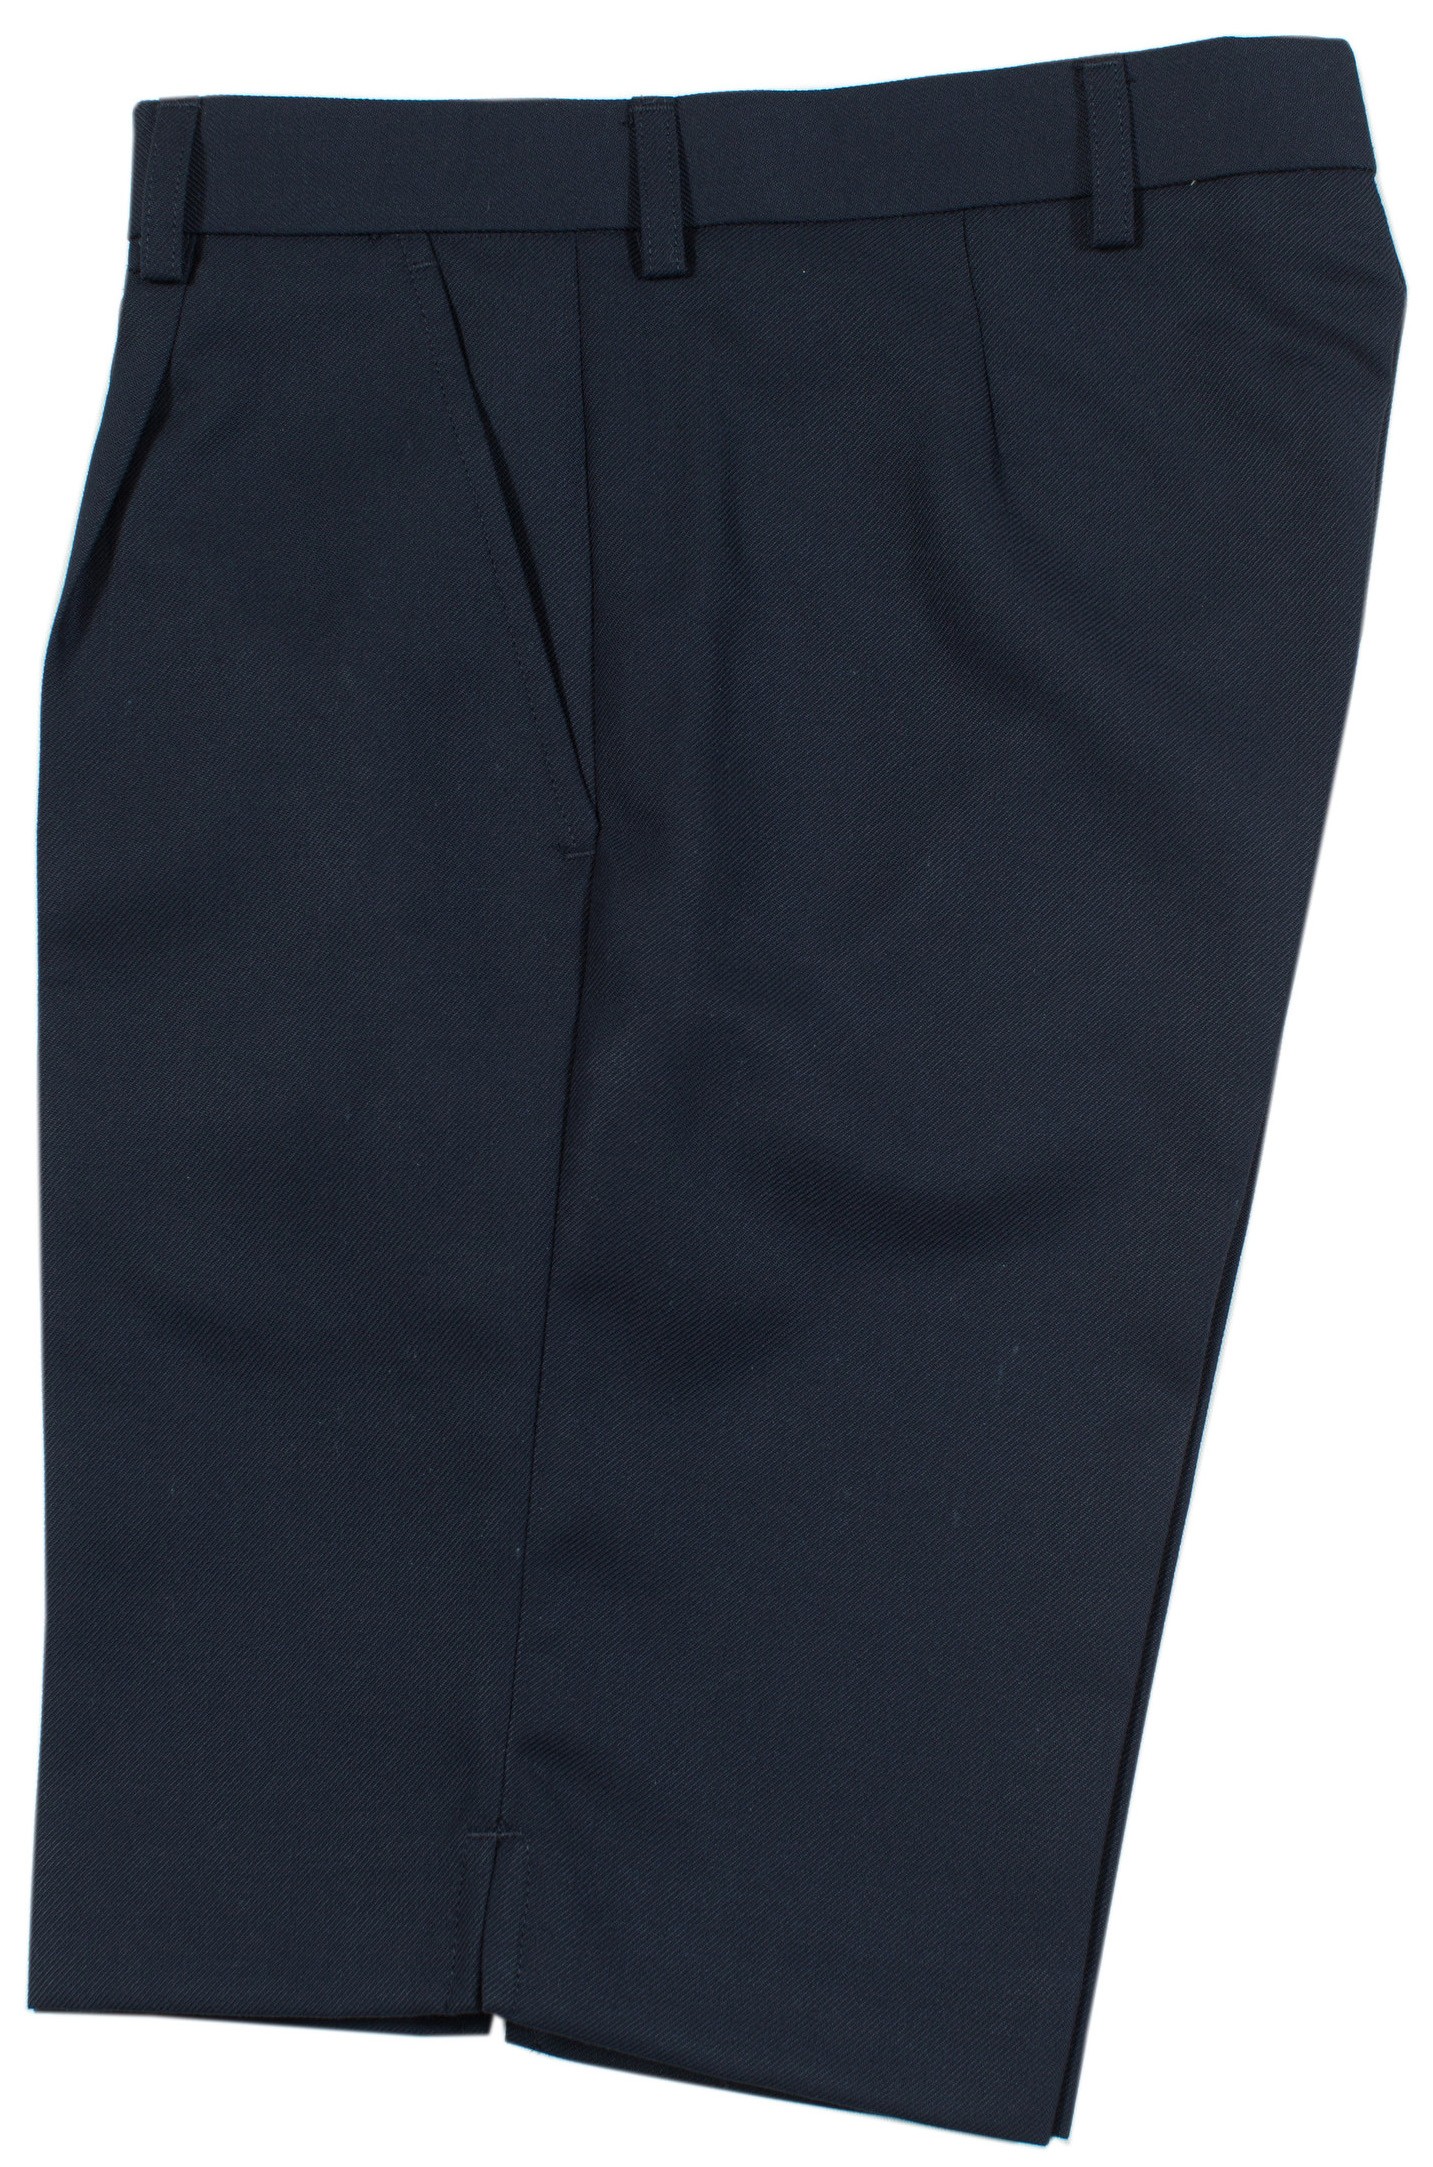 Trutex Secondary Boys Navy Shorts - The School Locker